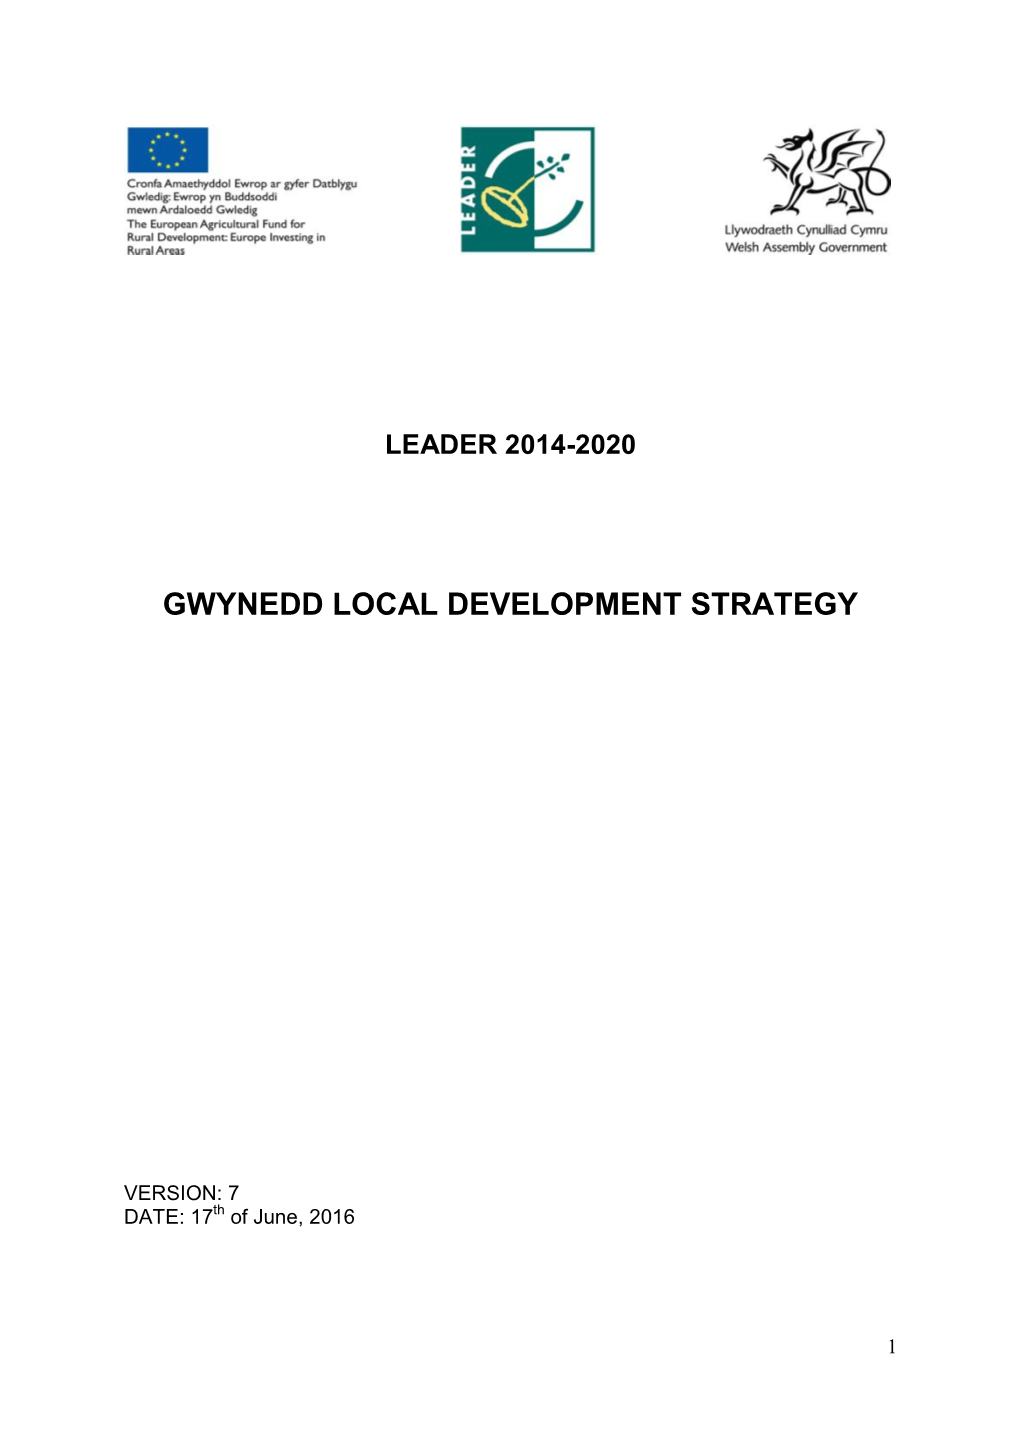 Gwynedd Local Development Strategy